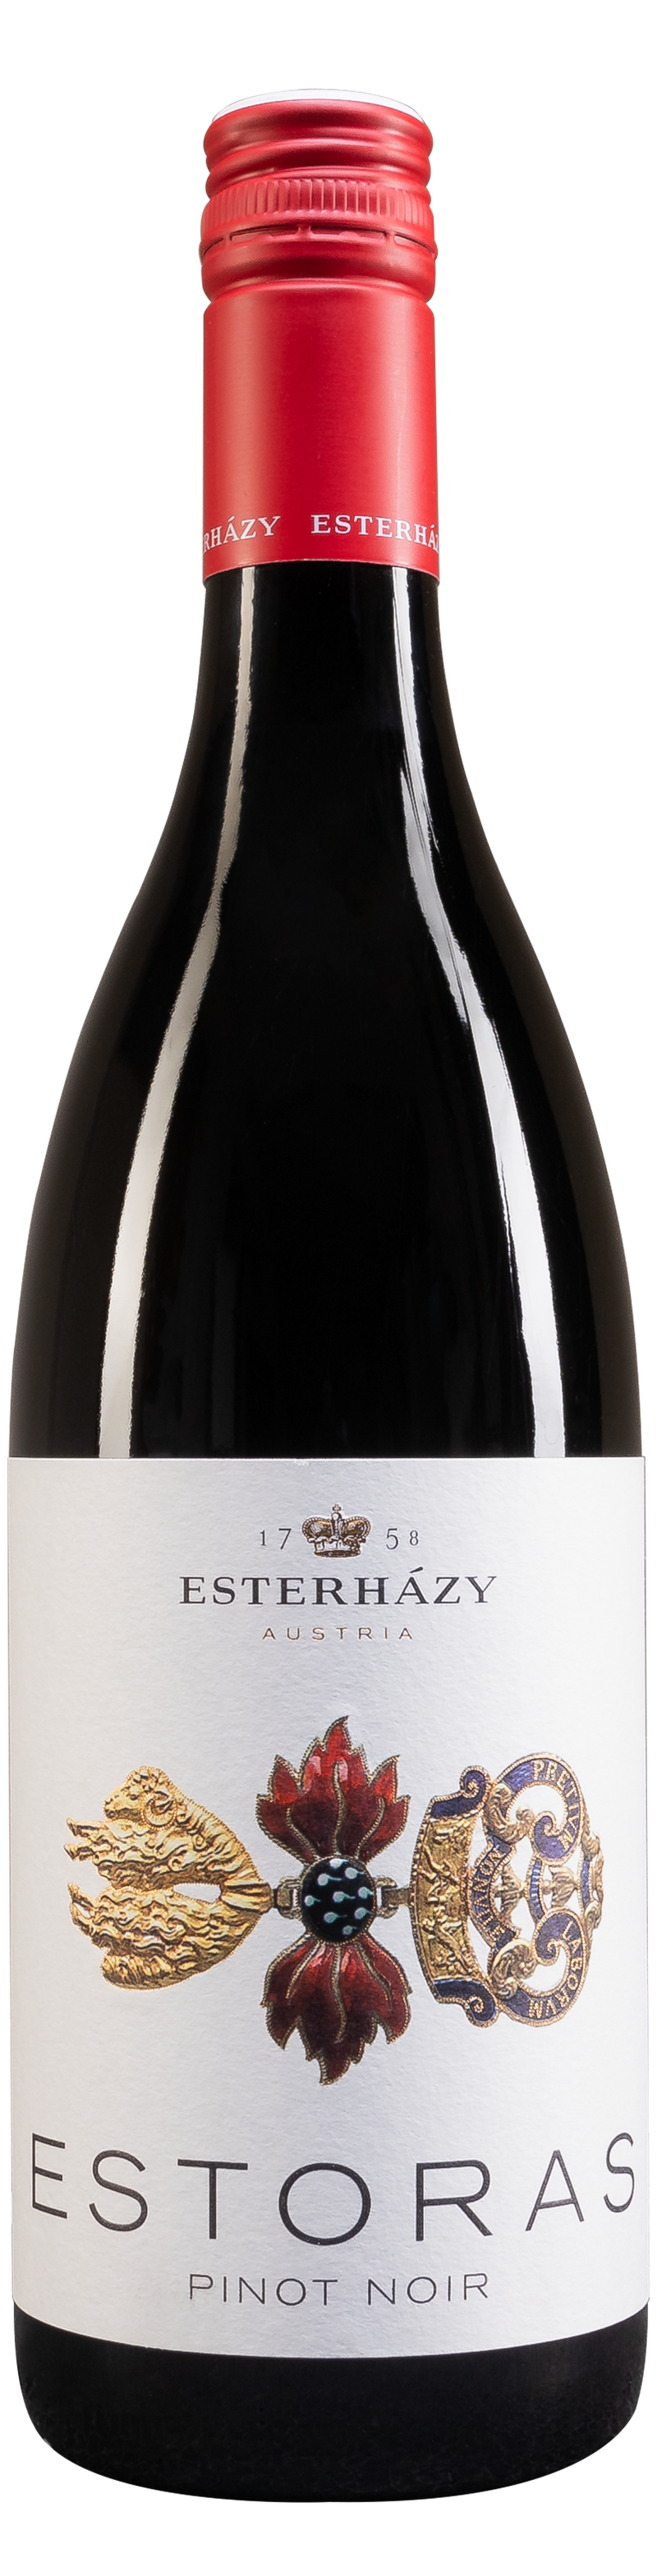 Esterházy Pinot Noir Estoras 2020 0,75l